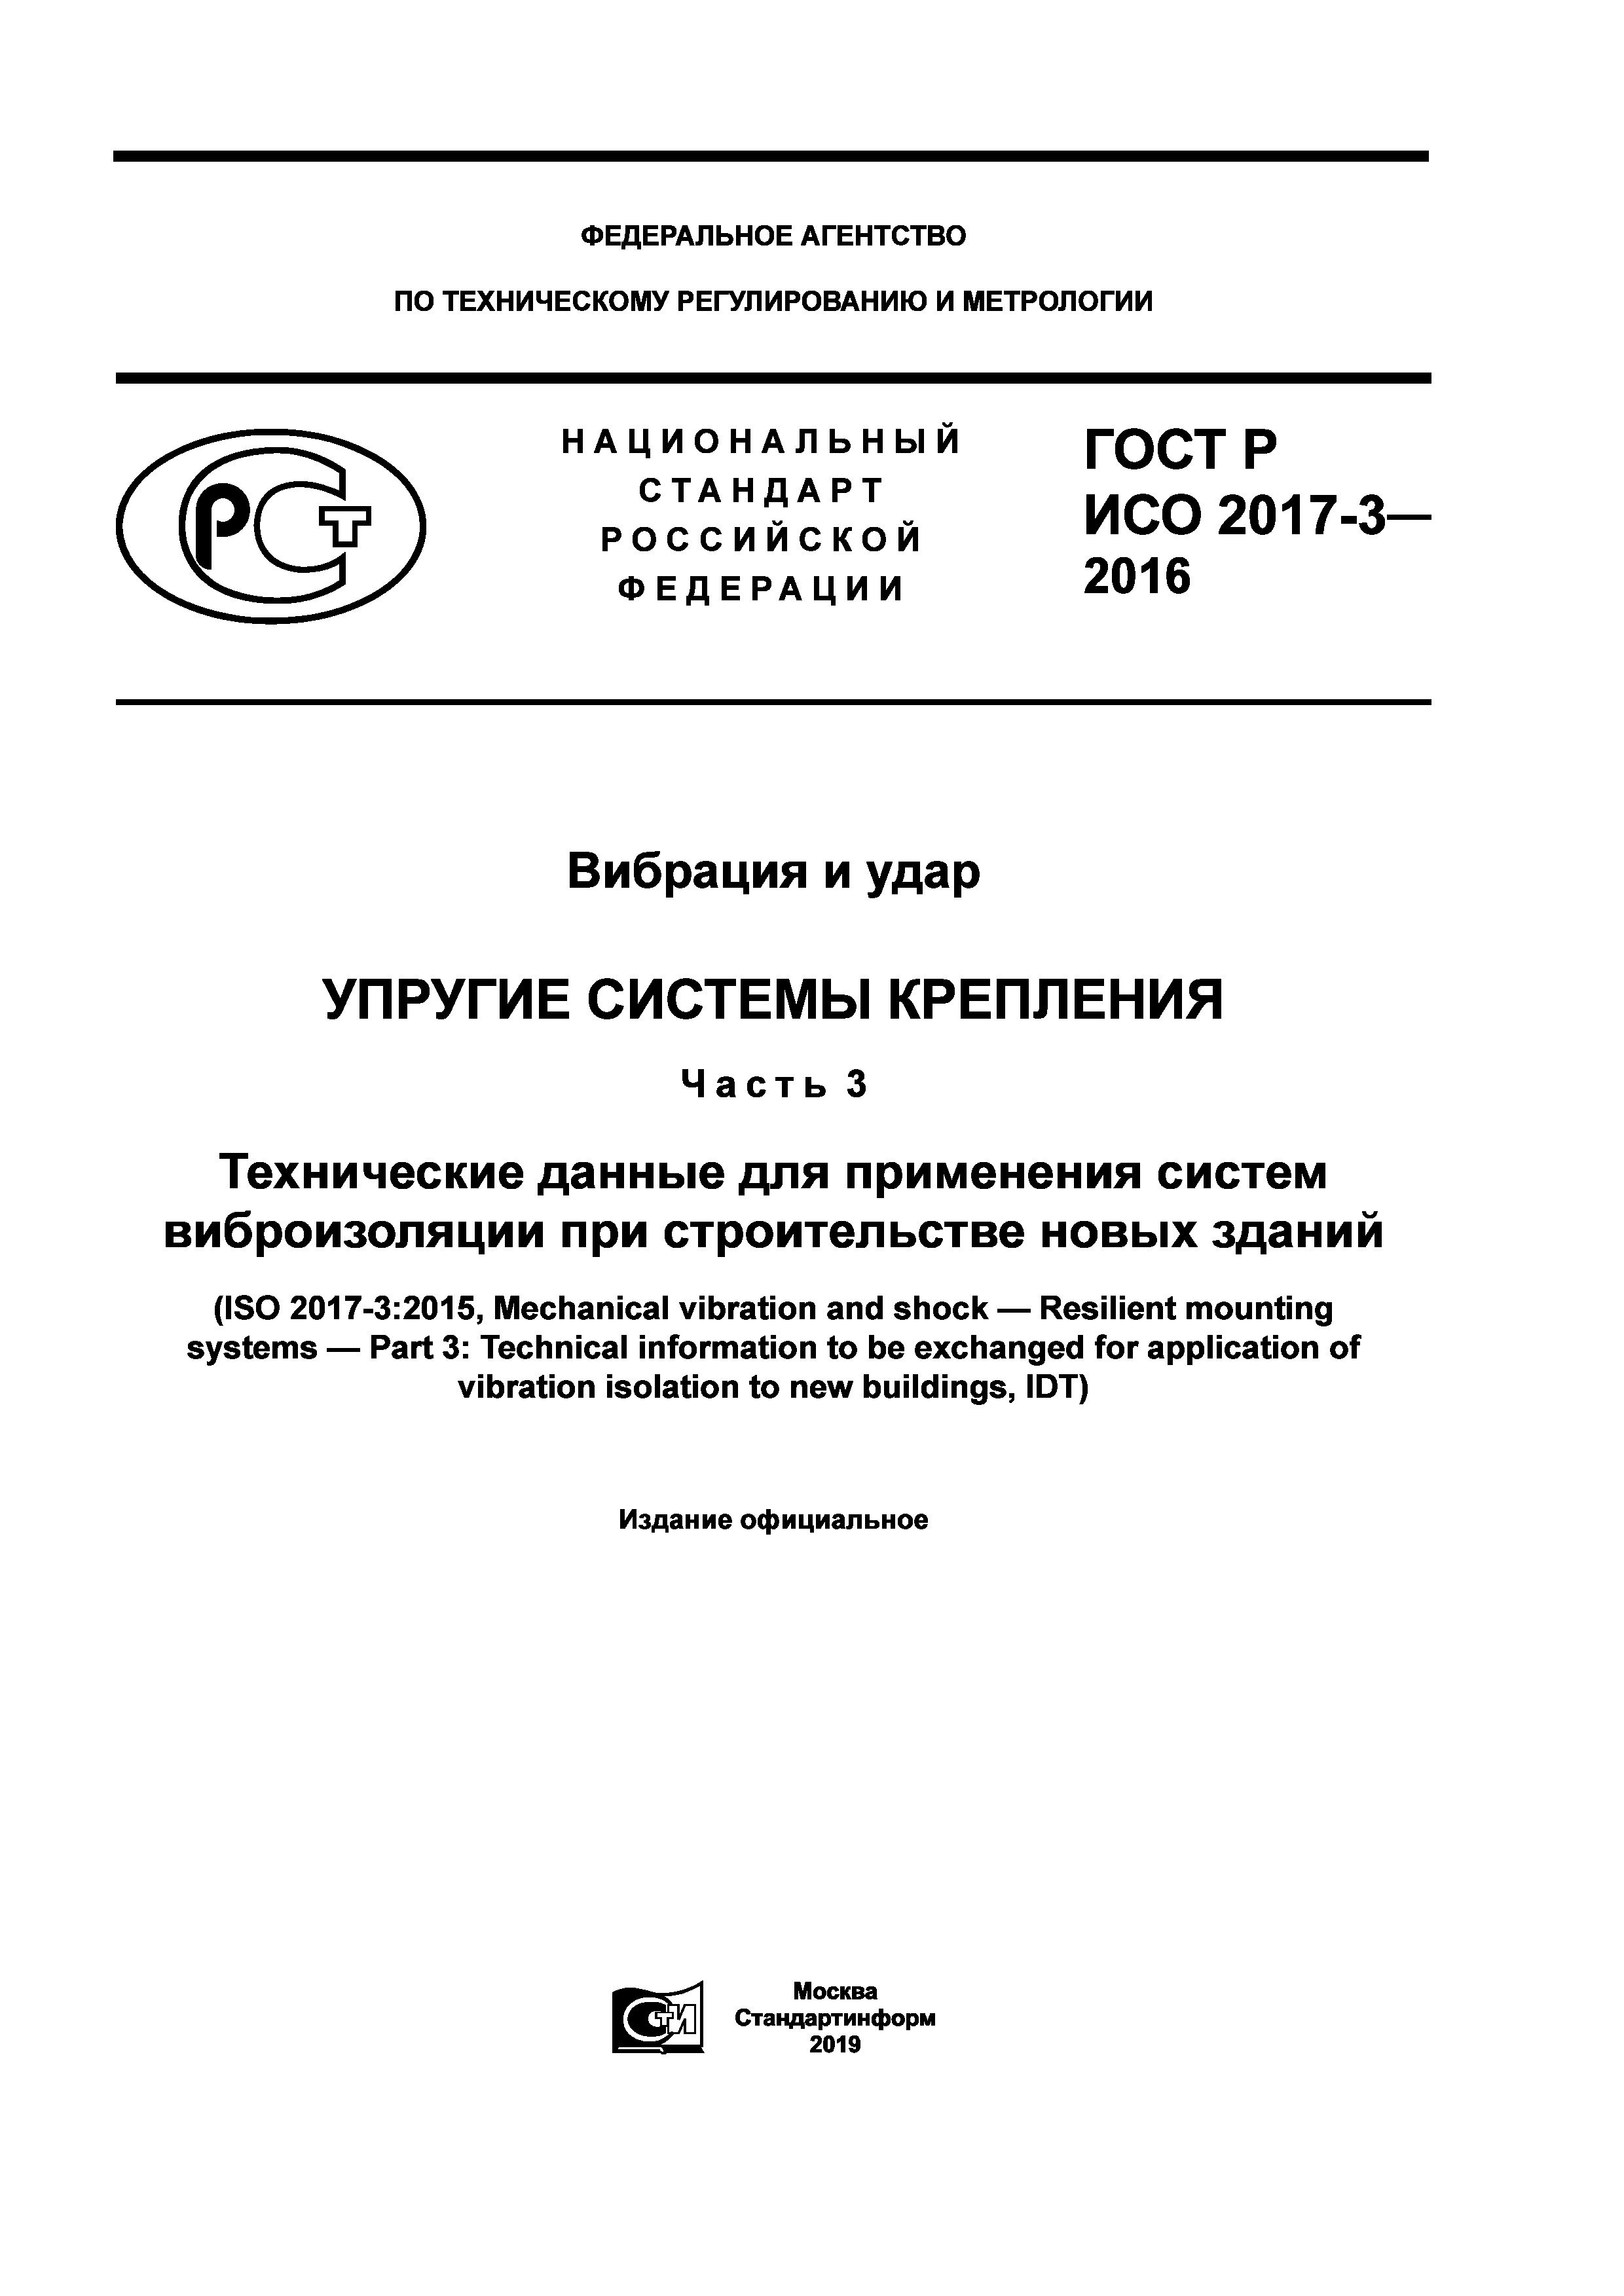 ГОСТ Р ИСО 2017-3-2016